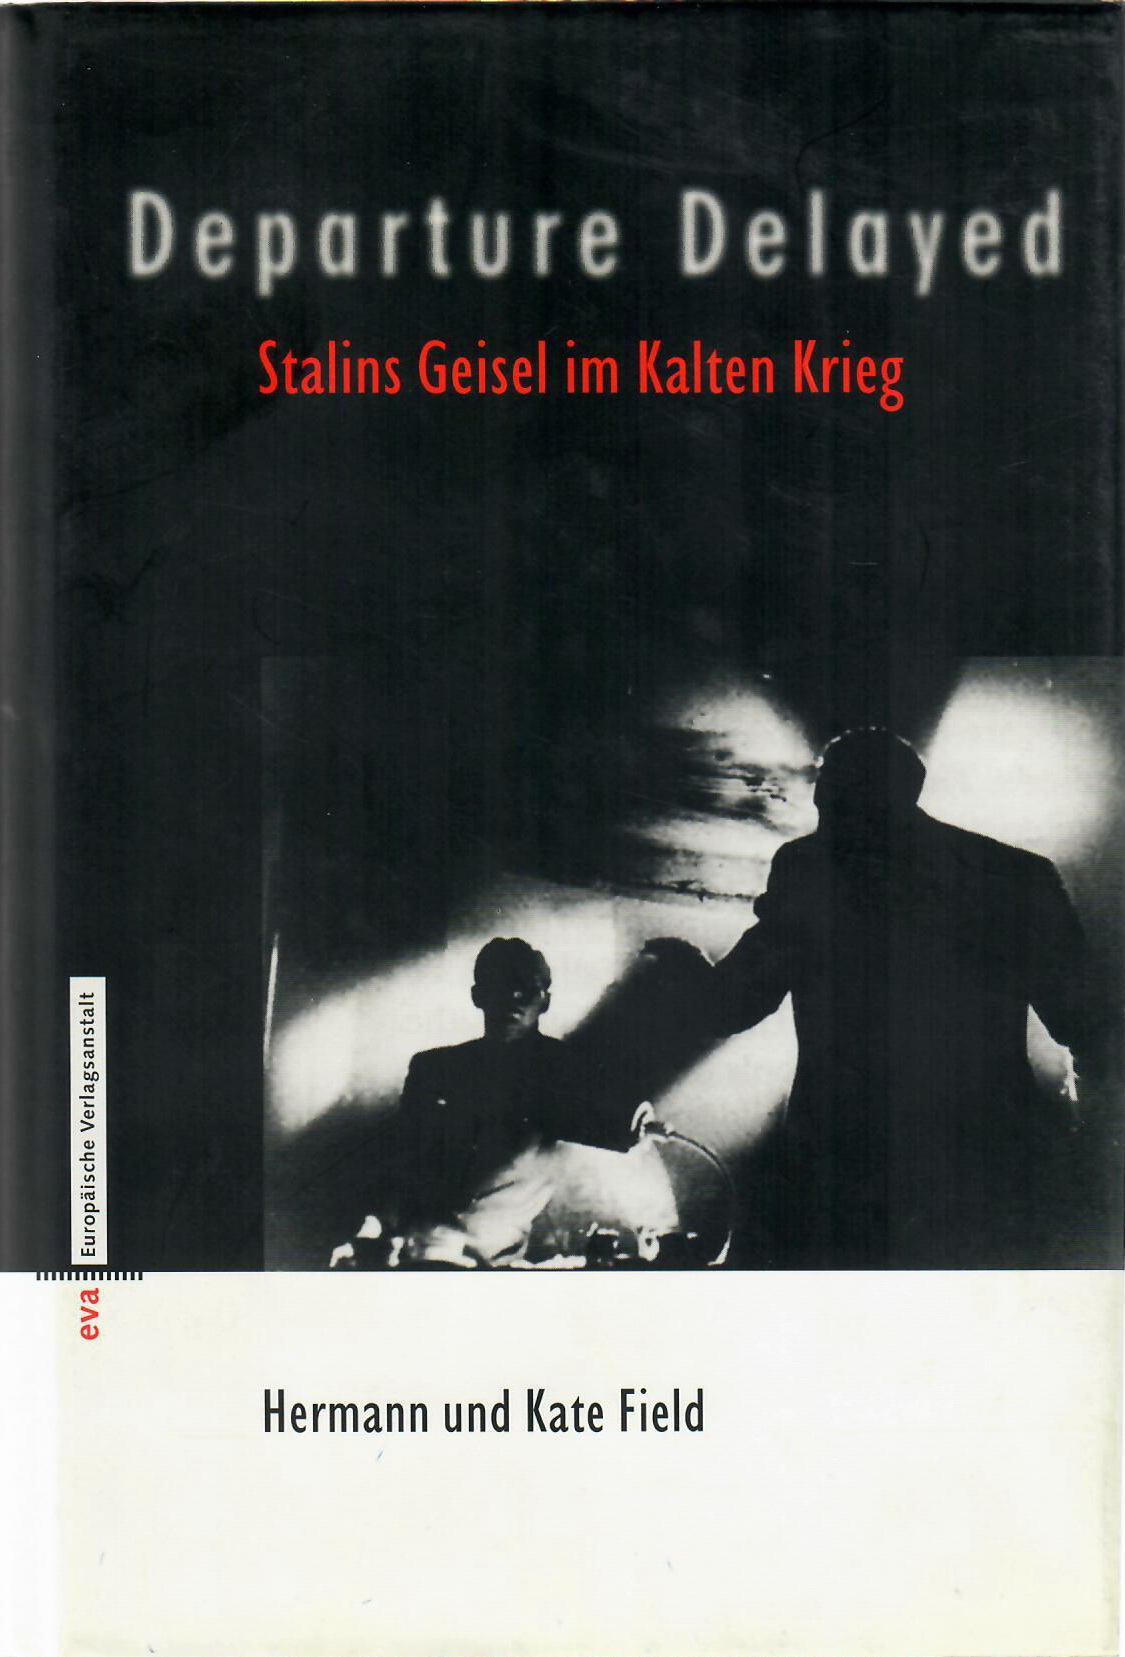 Buchcover von Hermann und Kate Field: Departure Delayed. Stalins Geisel im Kalten Krieg